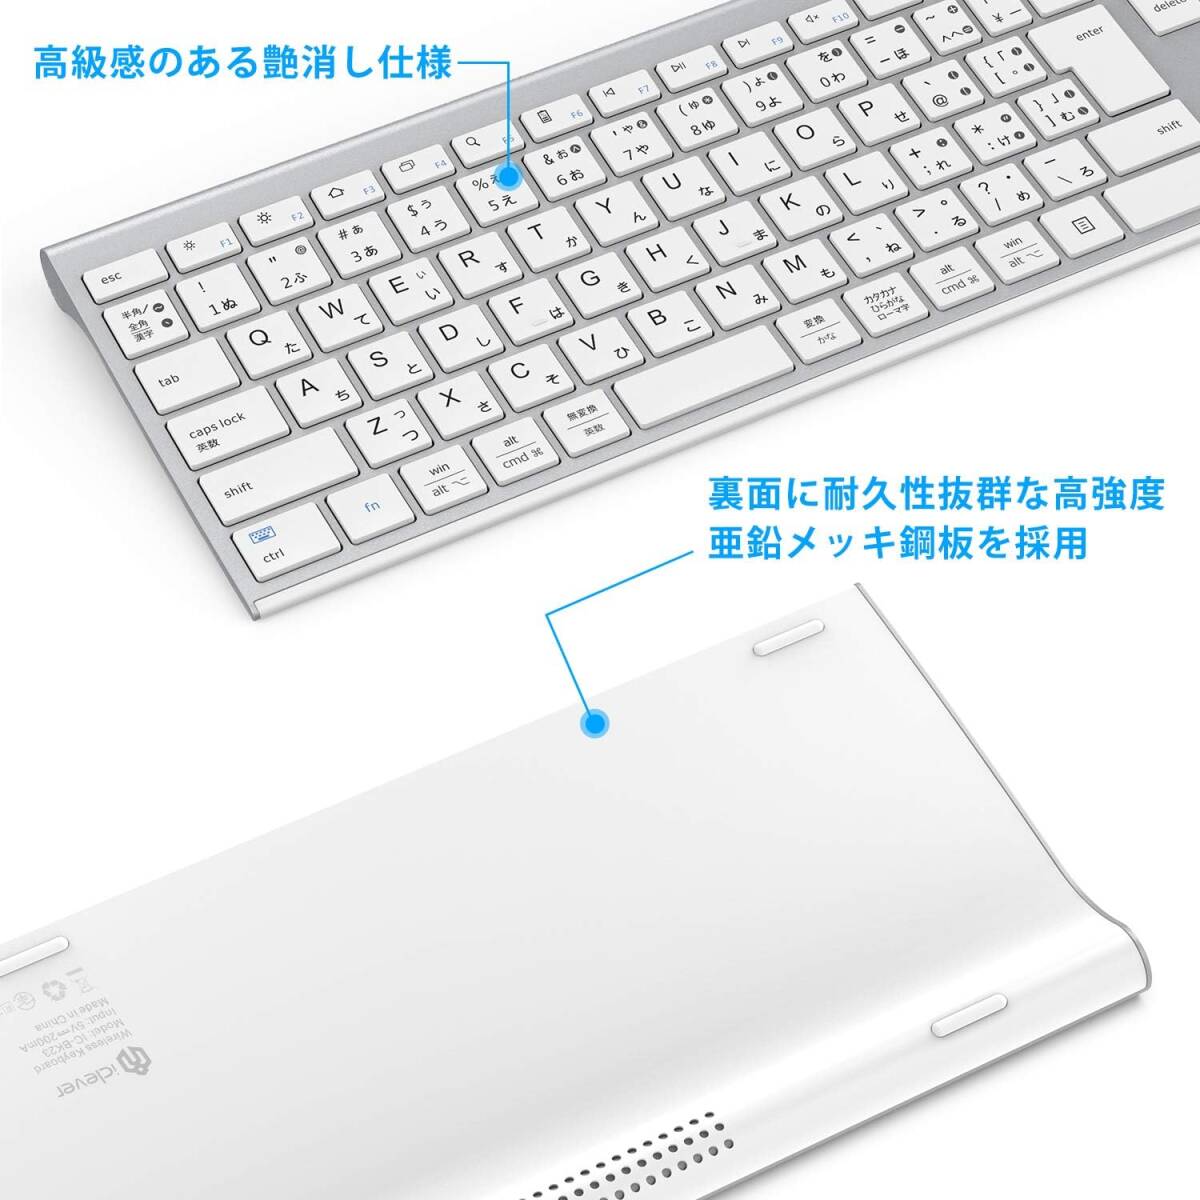 iClever ワイヤレス キーボード Bluetooth 日本語 JIS配列 無線 3台同時接続可能 type c充電式 メンブレン テンキー付きマルチペアリング_画像4